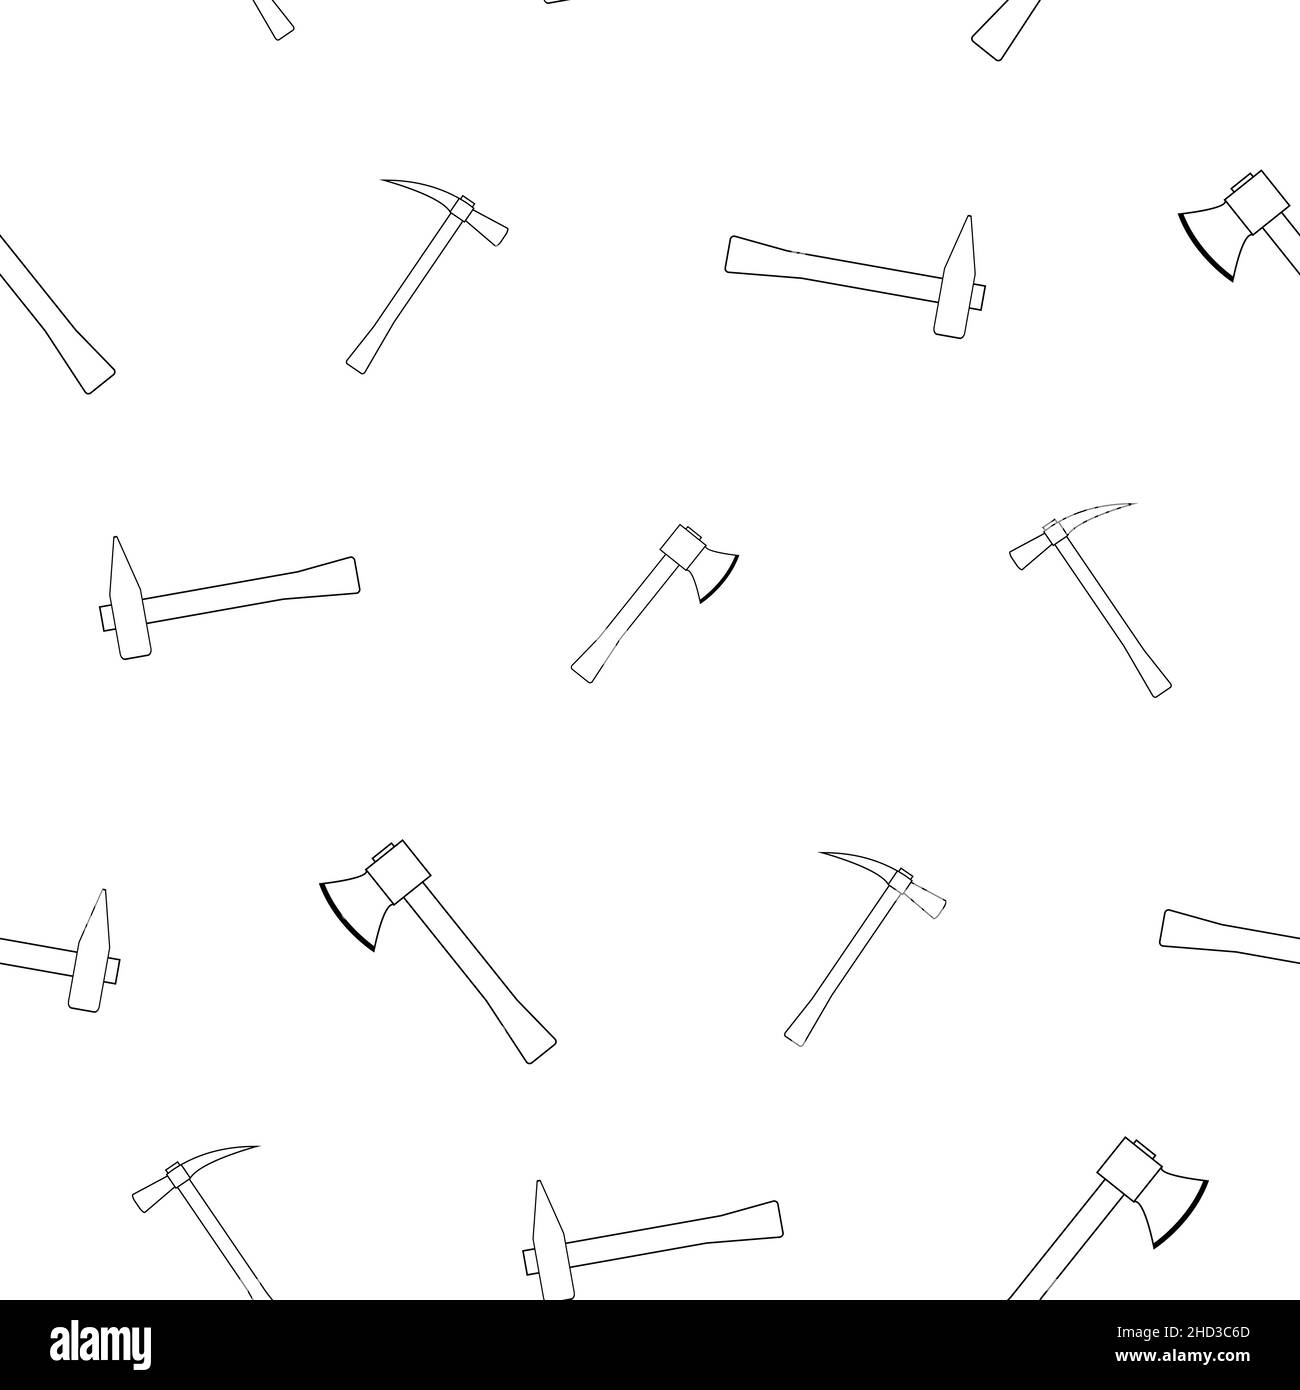 Motif de marteau, hache avec manche en bois en ligne.Sur fond blanc.Outils pour menuisiers et menuisiers.Illustration vectorielle plate. Illustration de Vecteur